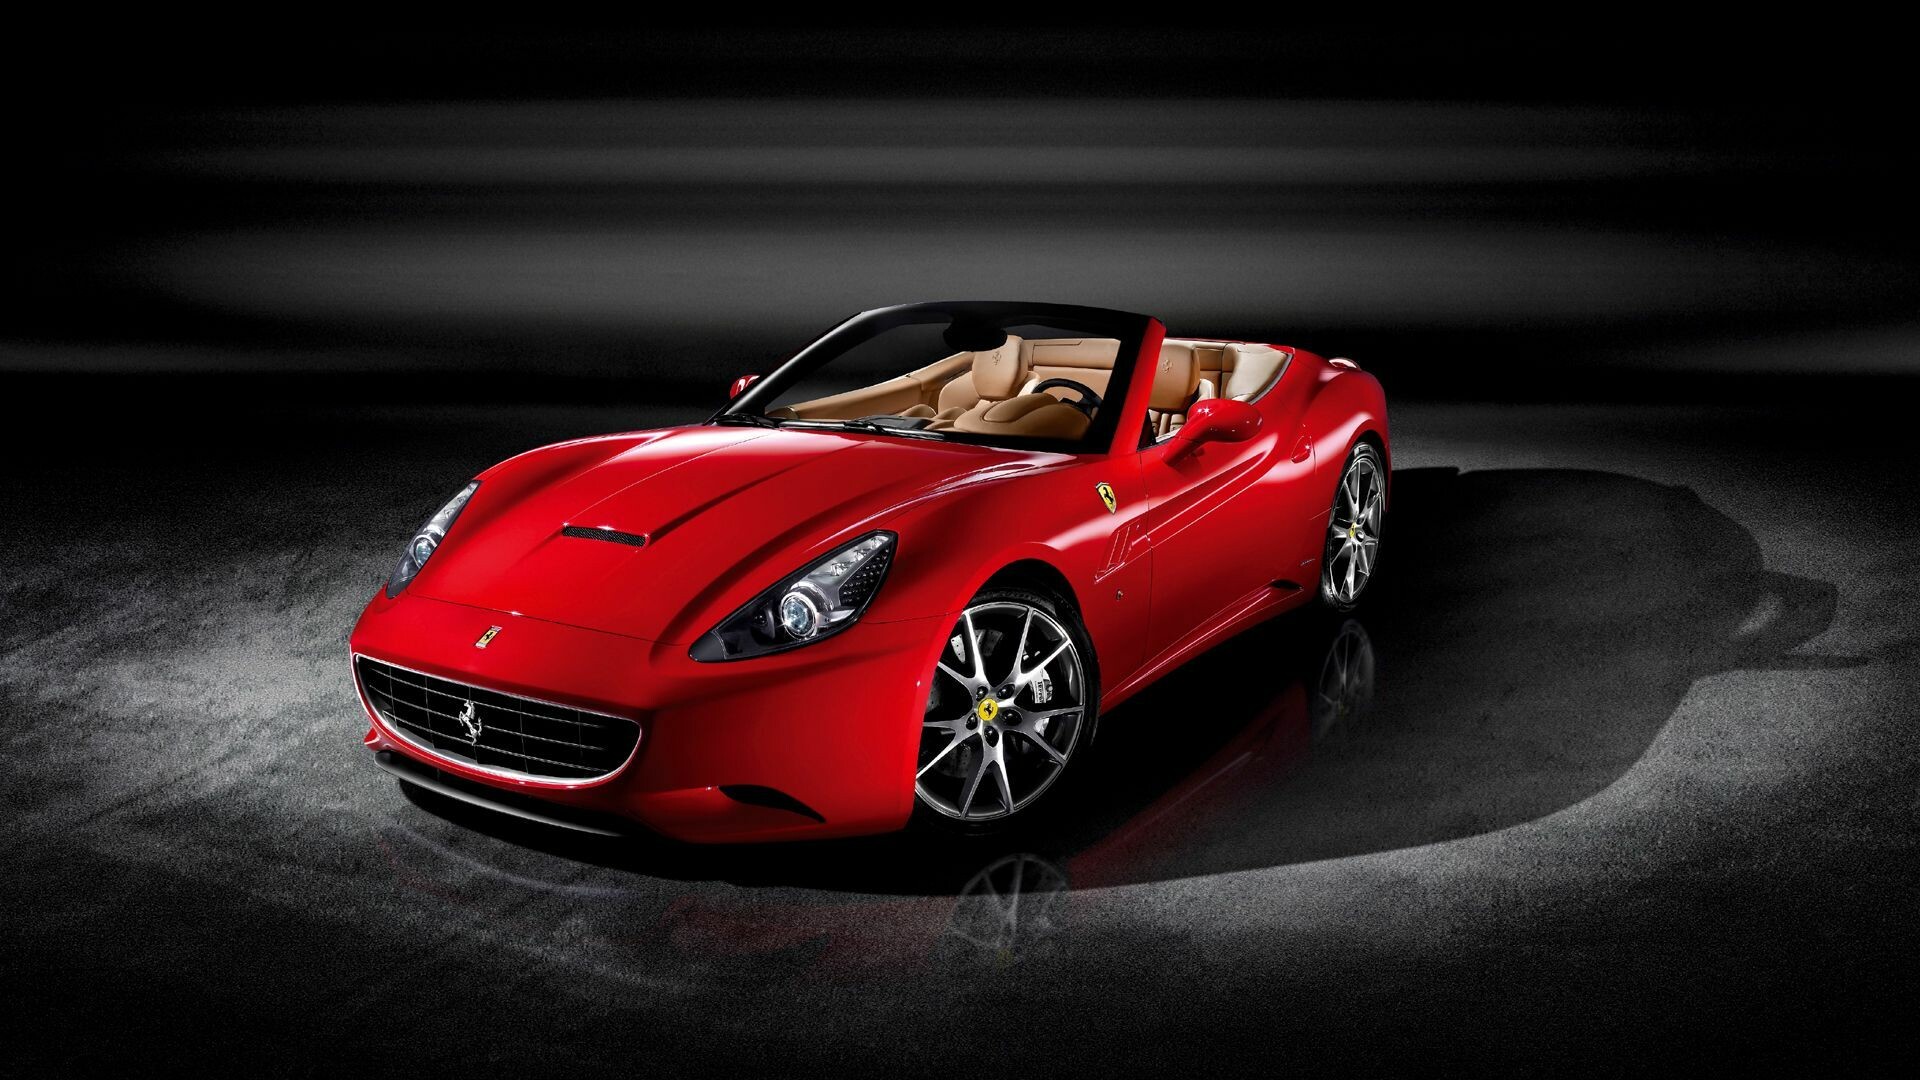 Ferrari Wallpapers: Free HD Download [500+ HQ] | Unsplash